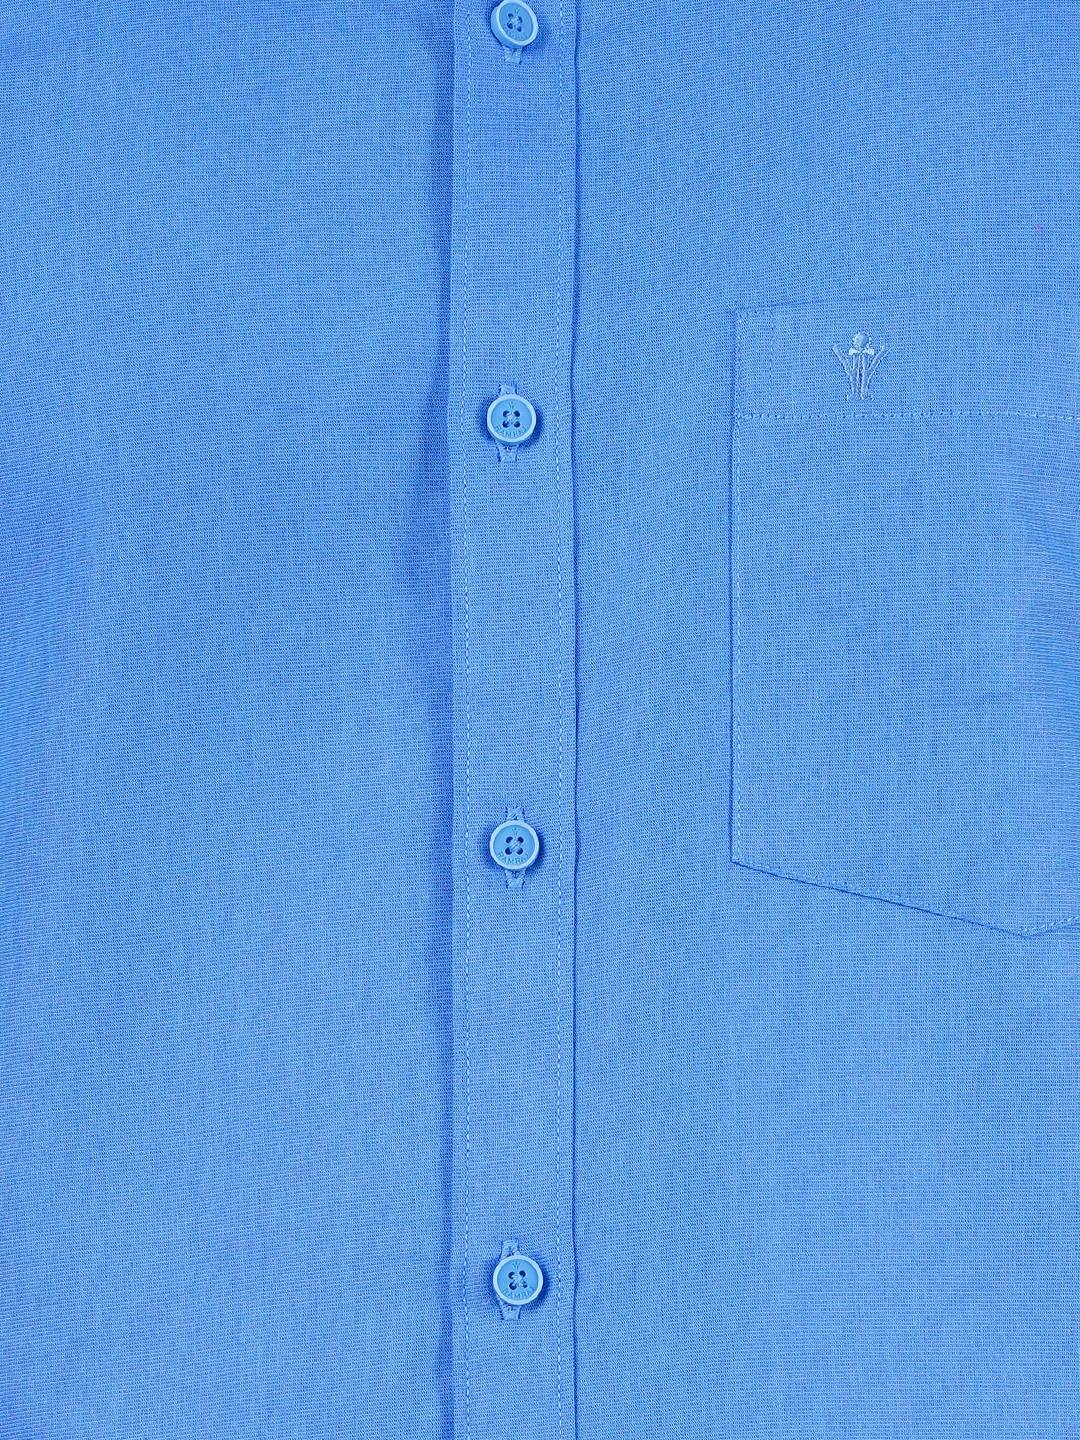 Ramraj | Ramraj Cotton Mens Cotton Blue Full Sleeves Shirt With Jari Dhoti Combo